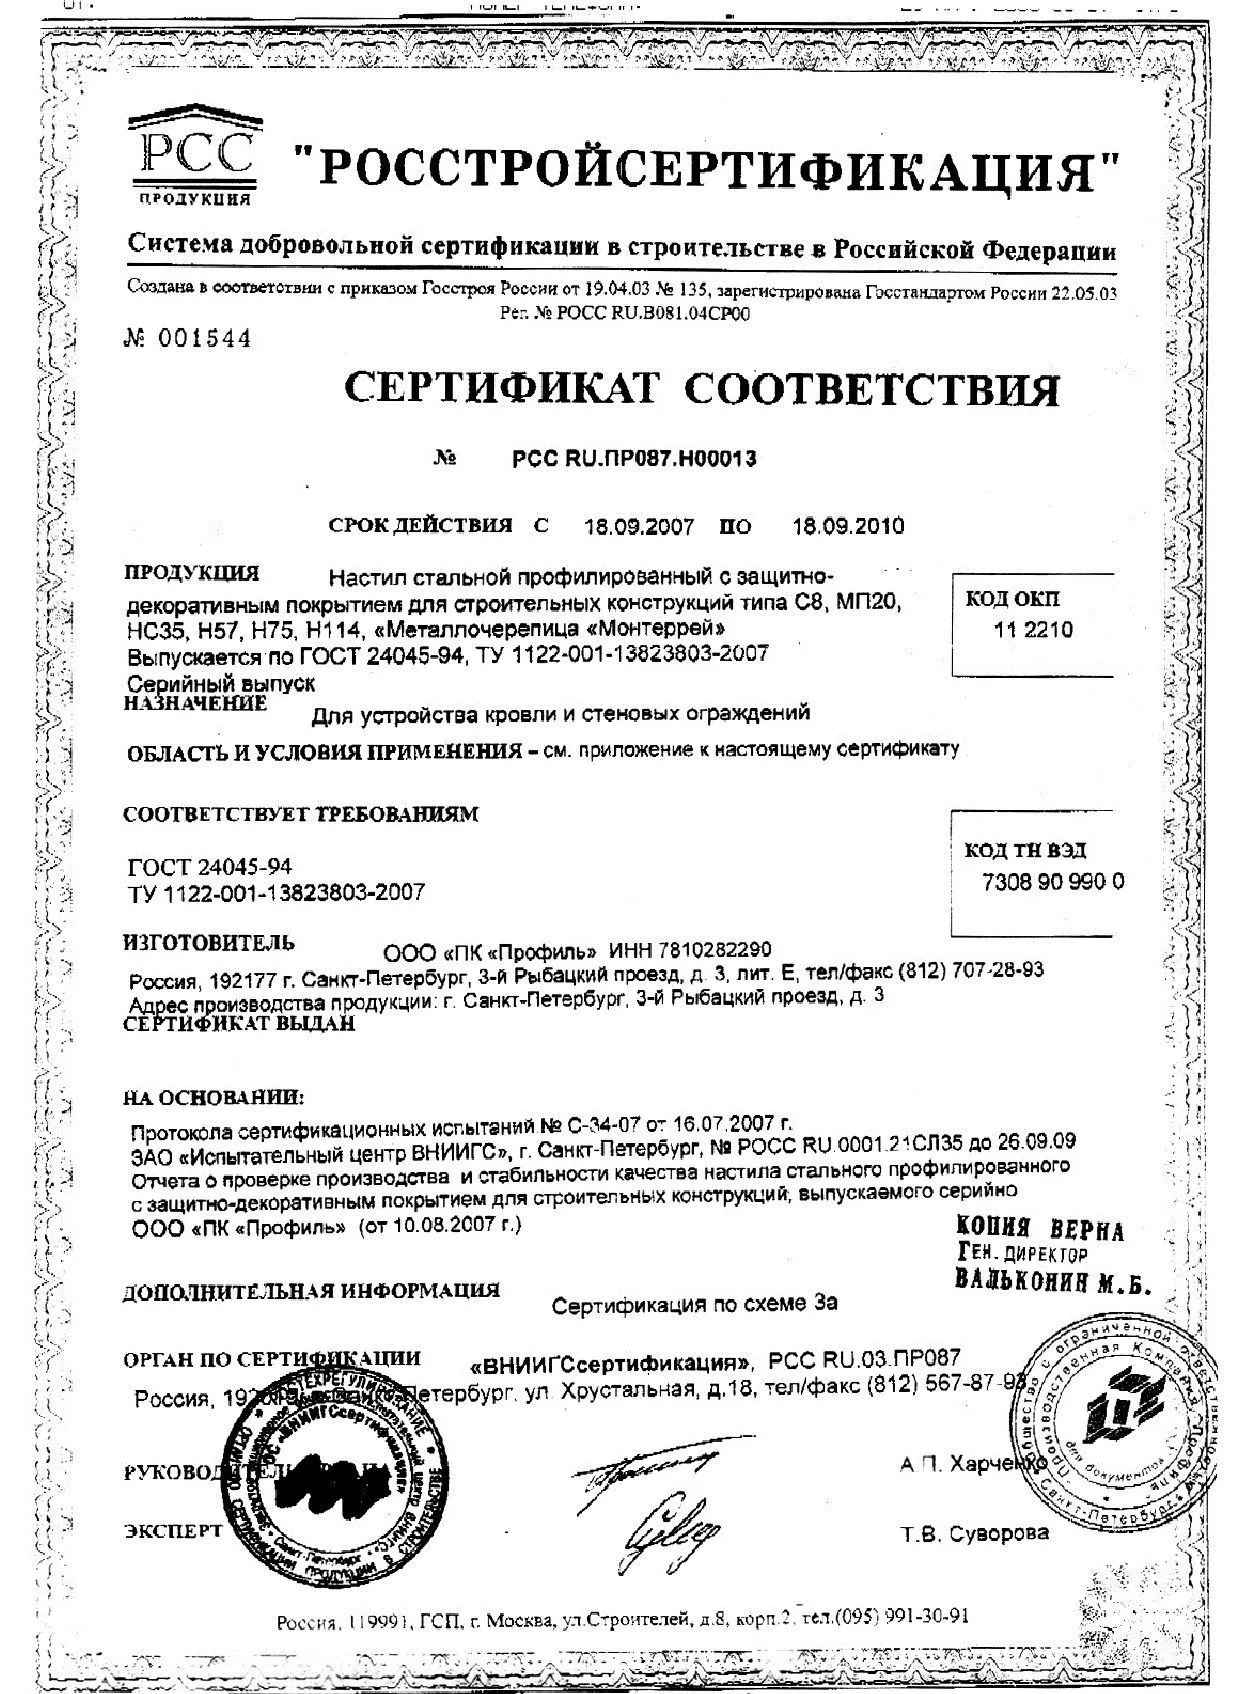 Сертификат соответствия на стальной профнастил (1.1)